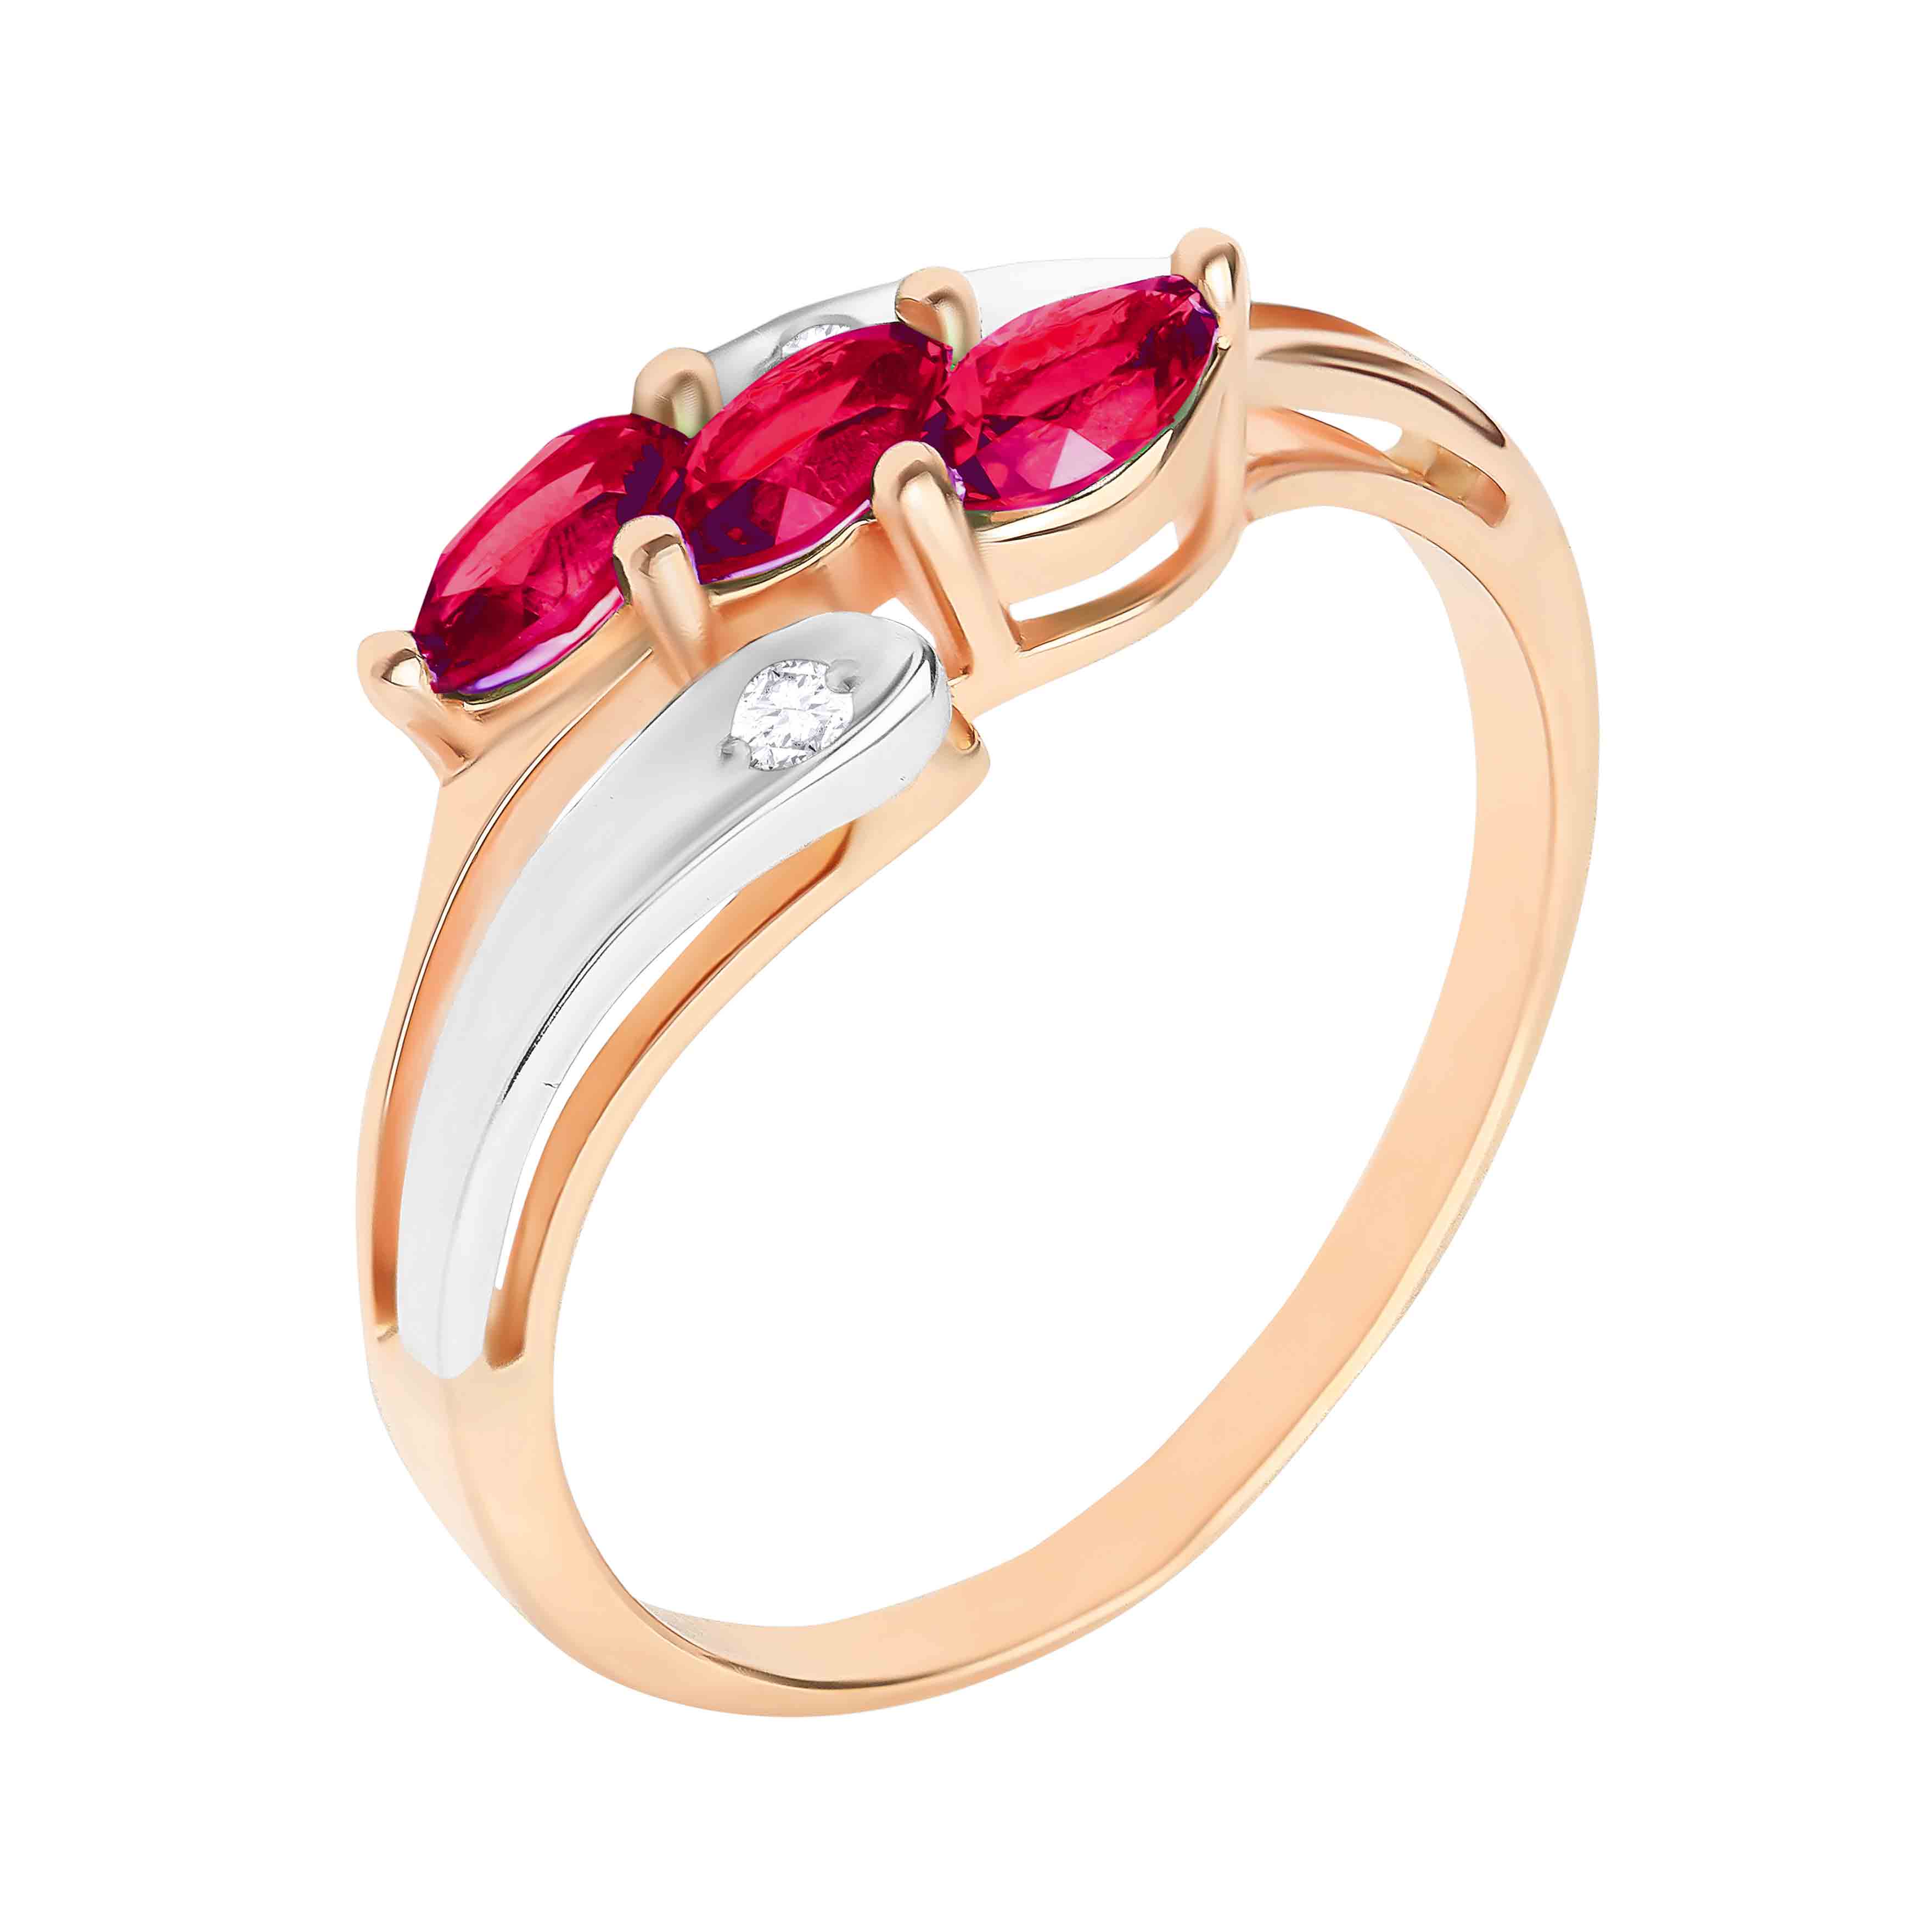 Glad Hej vejledning 3 marquise rubies ring | Golden Flamingo